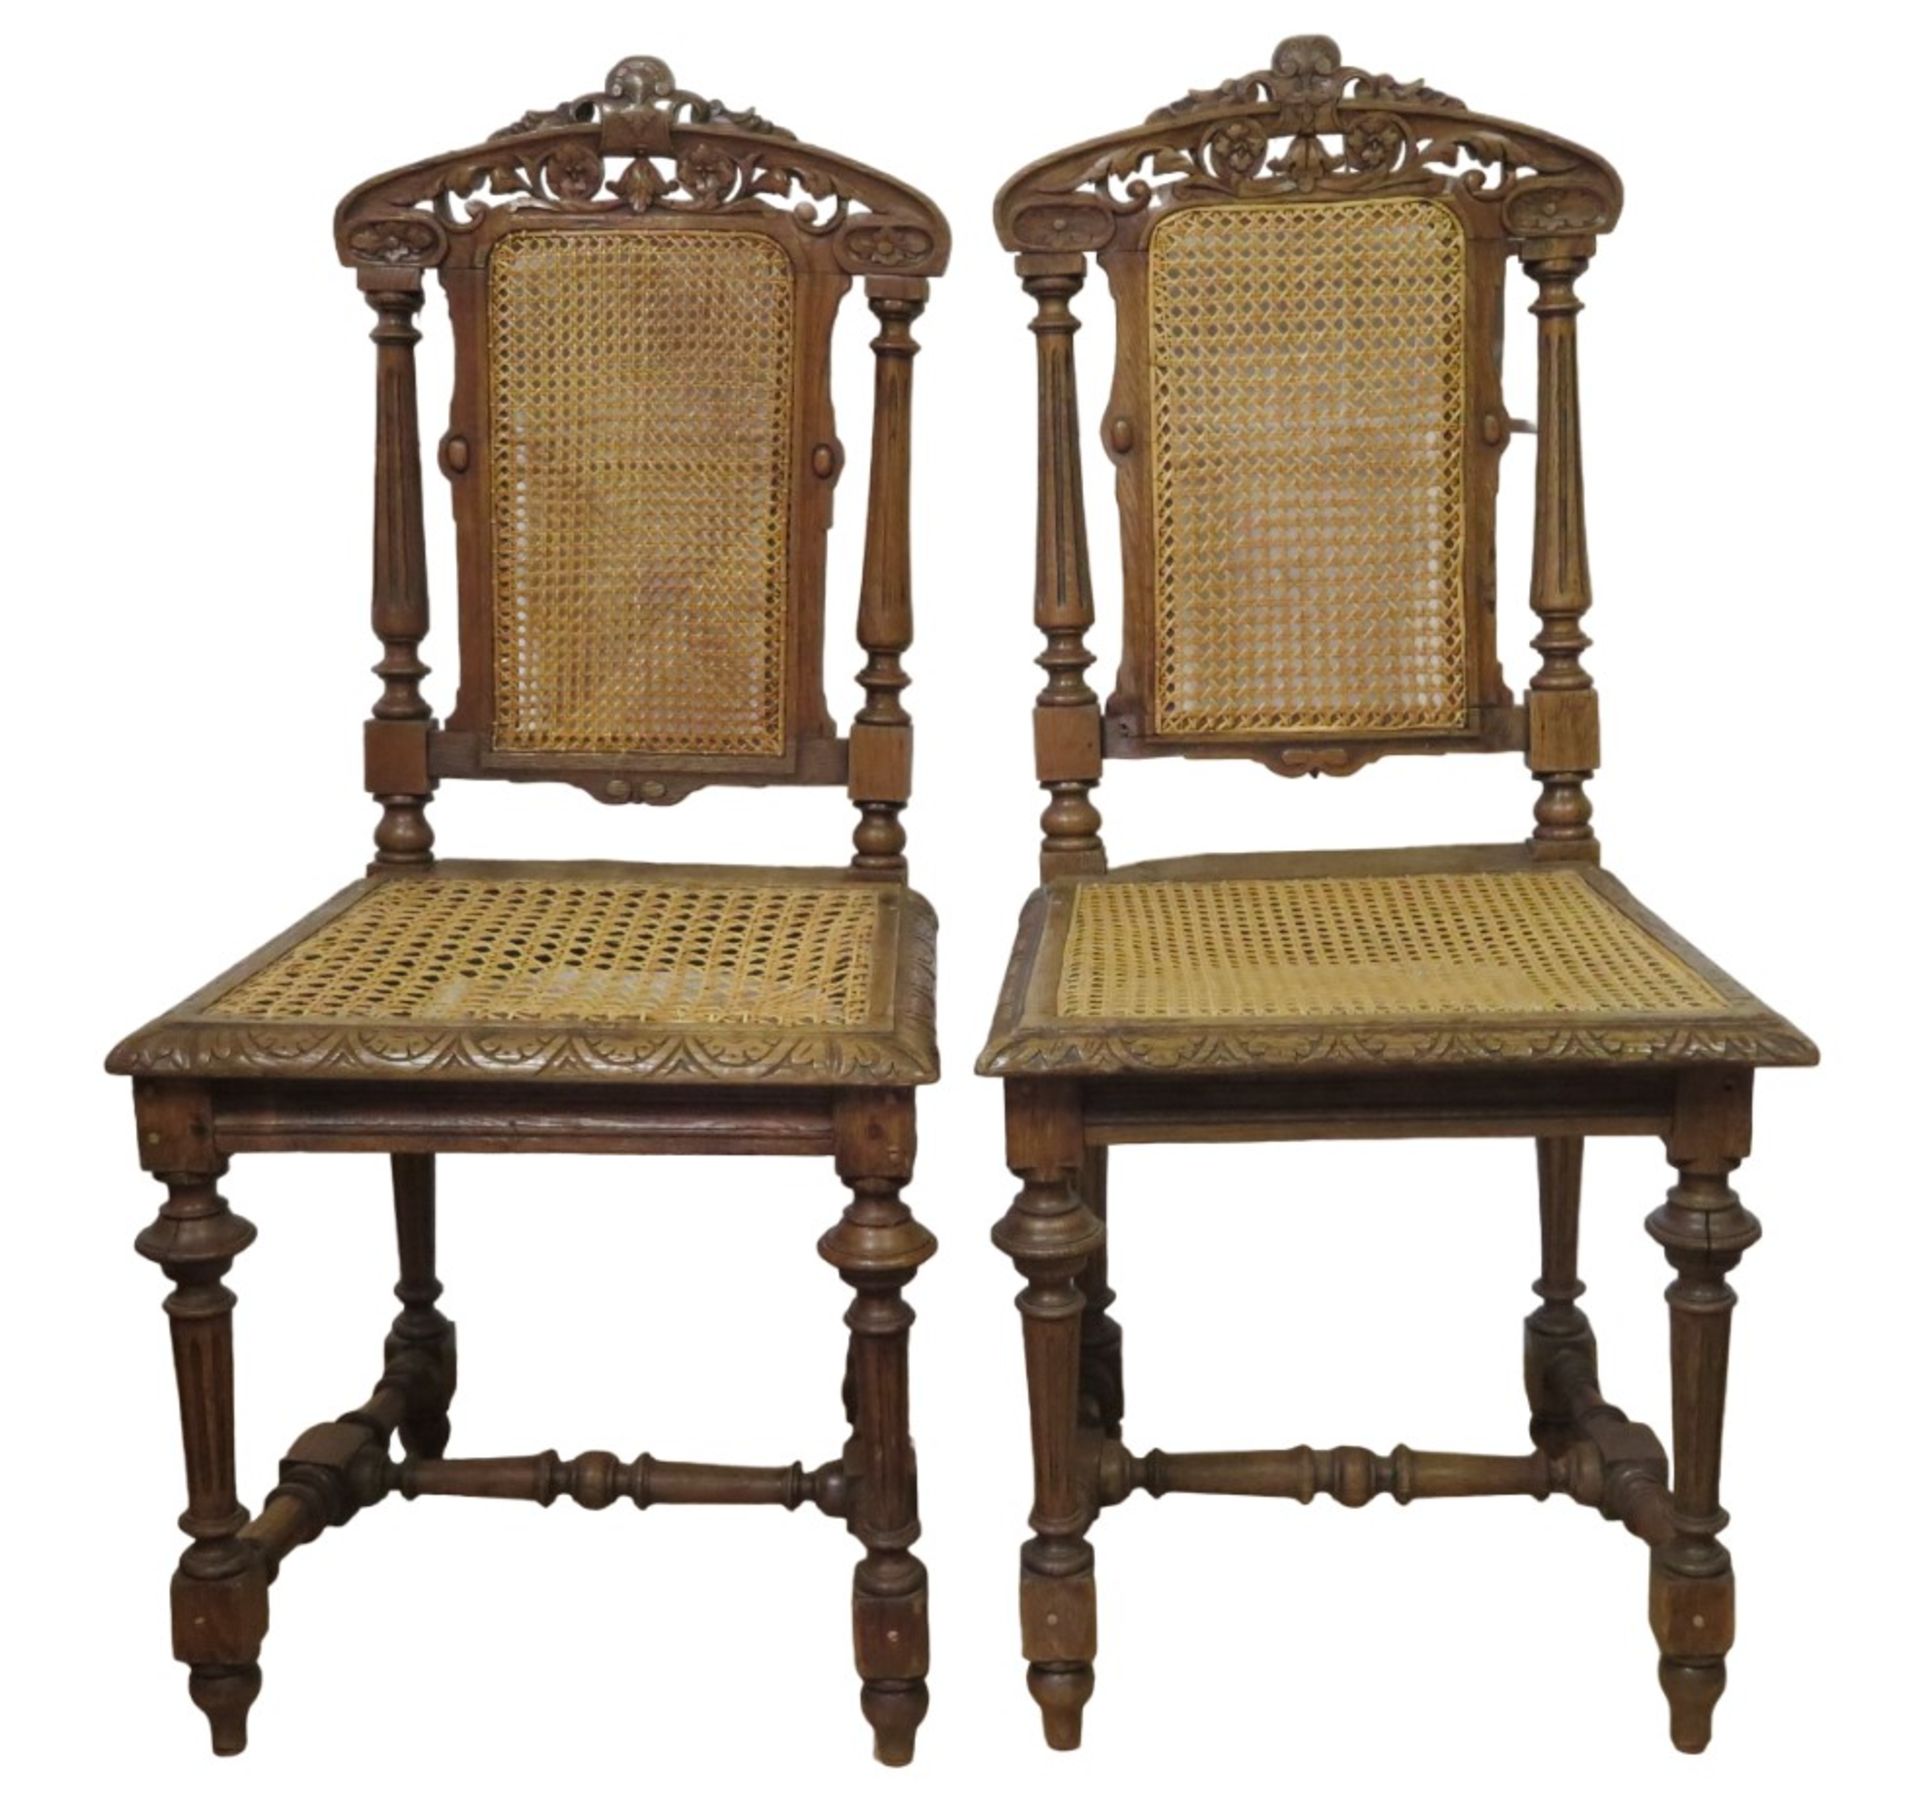 2 Stühle, Gründerzeit, um 1880, Eiche reich geschnitzt, Rückenlehne und Sitzfläche mit Wiener Gefle